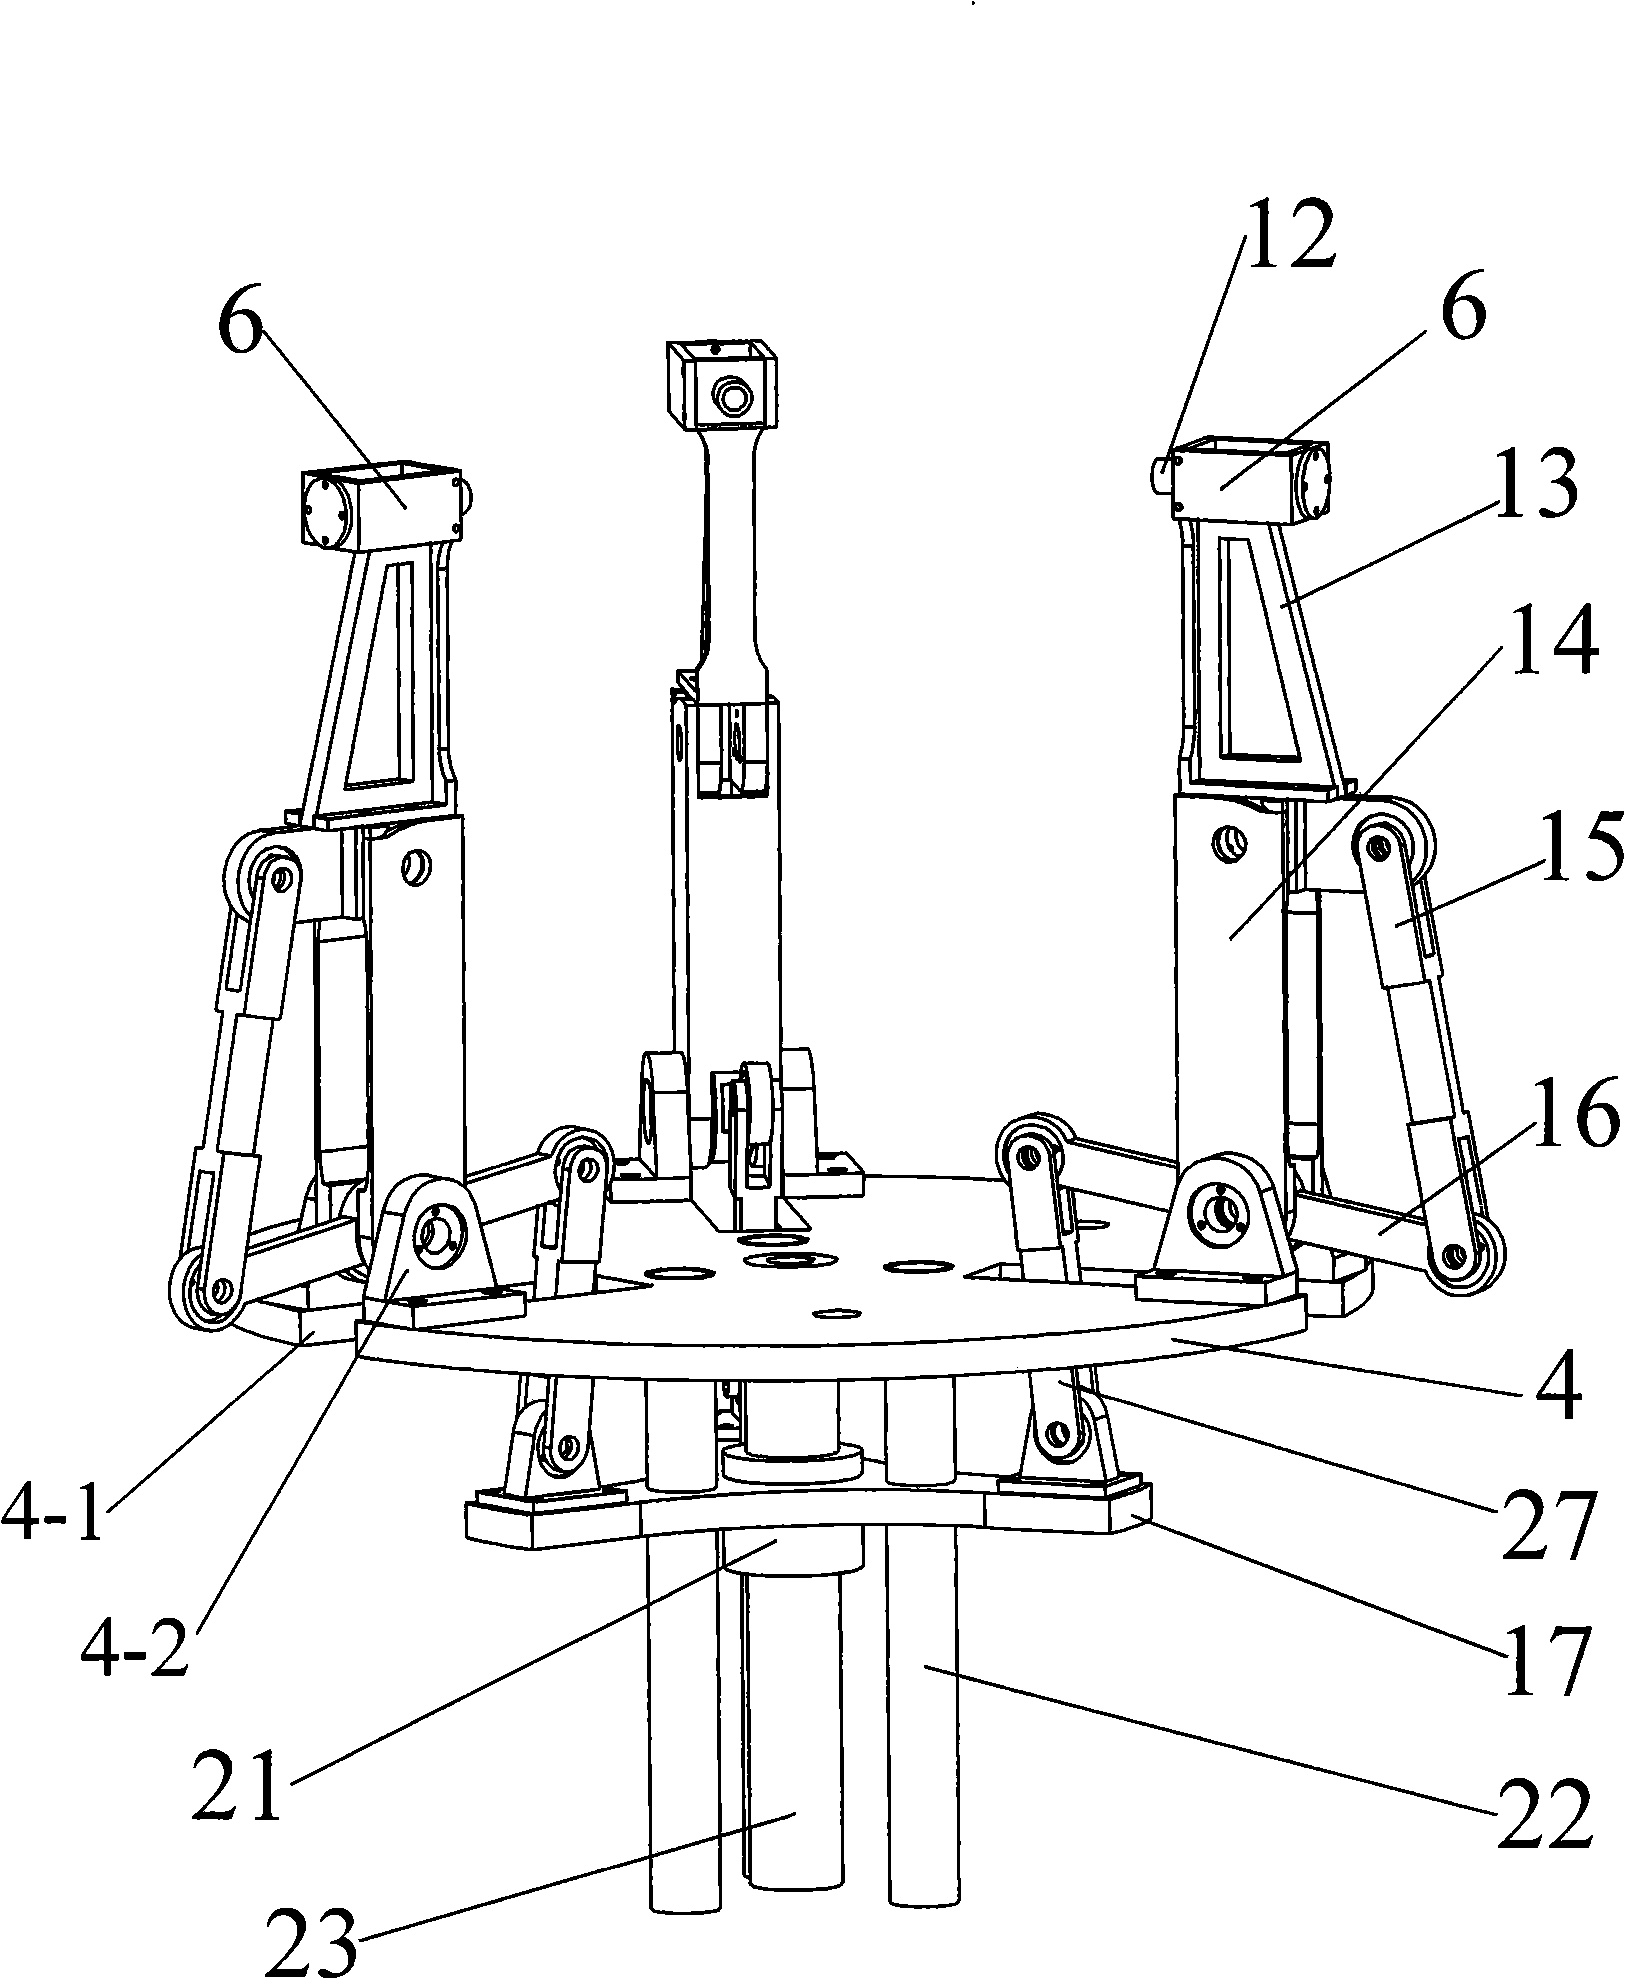 Under-actuated three-arm non-cooperative target docking capture apparatus